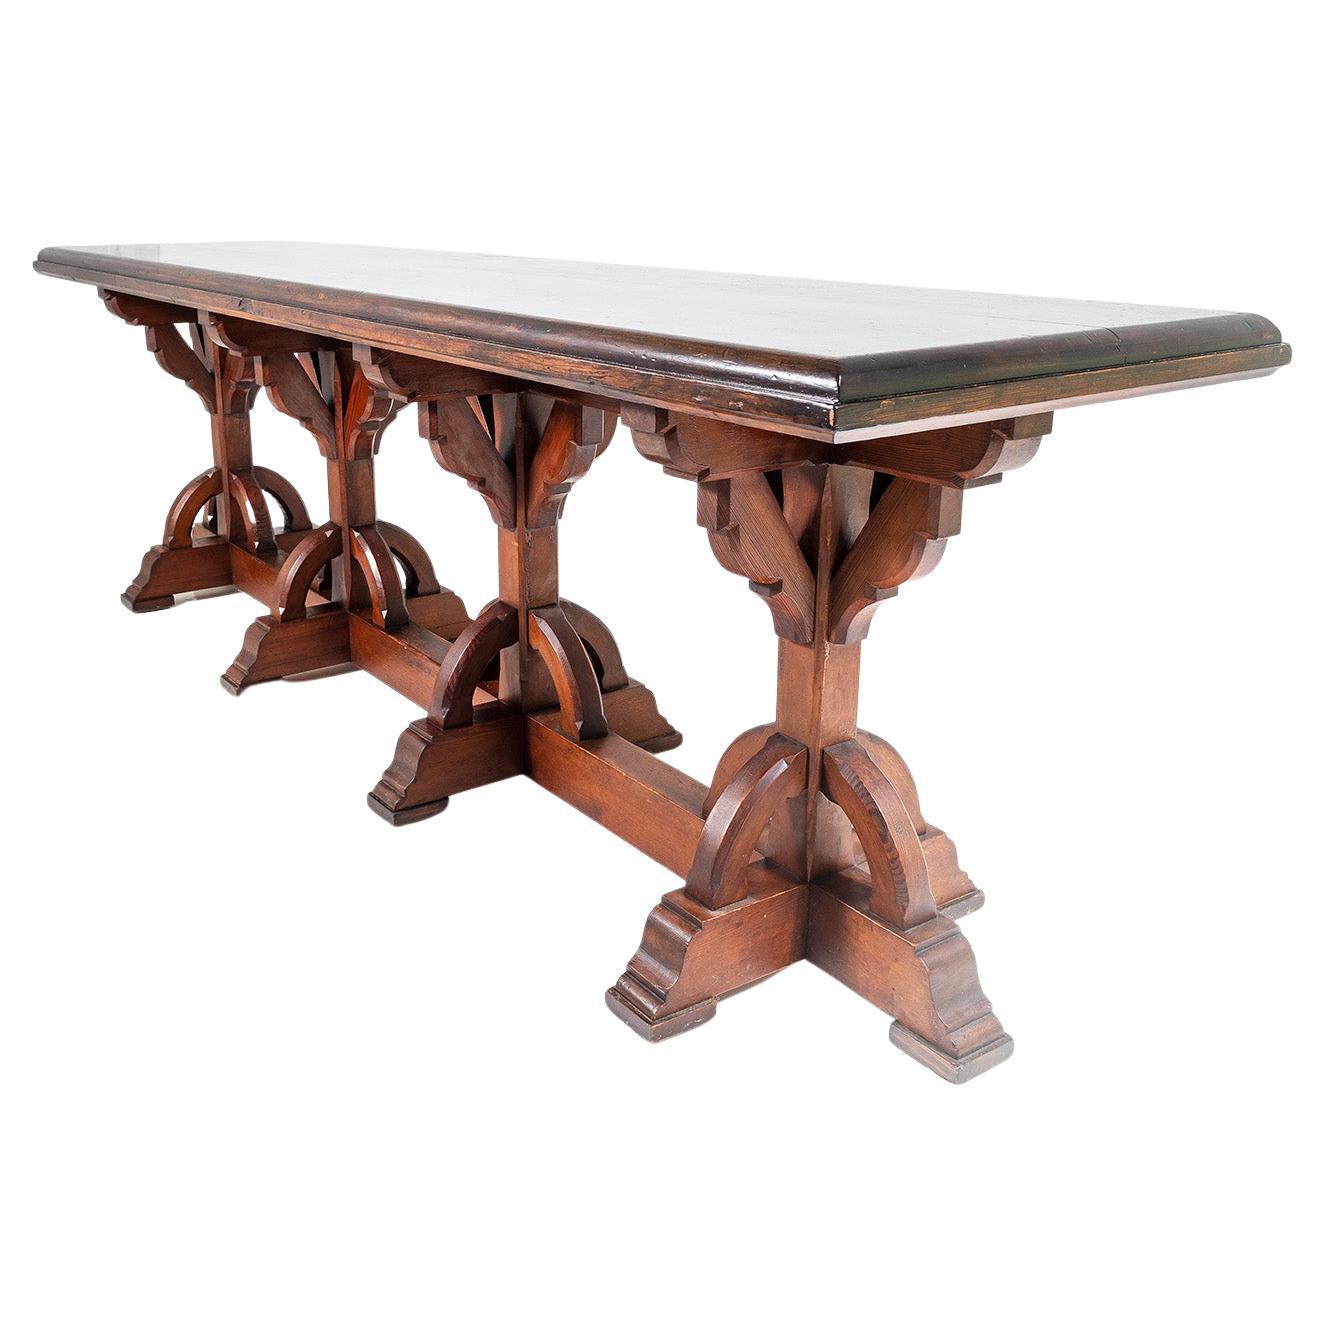 Großer viktorianischer Tisch im Ecclesiastical Gothic Revival-Stil in der Art von Pugin